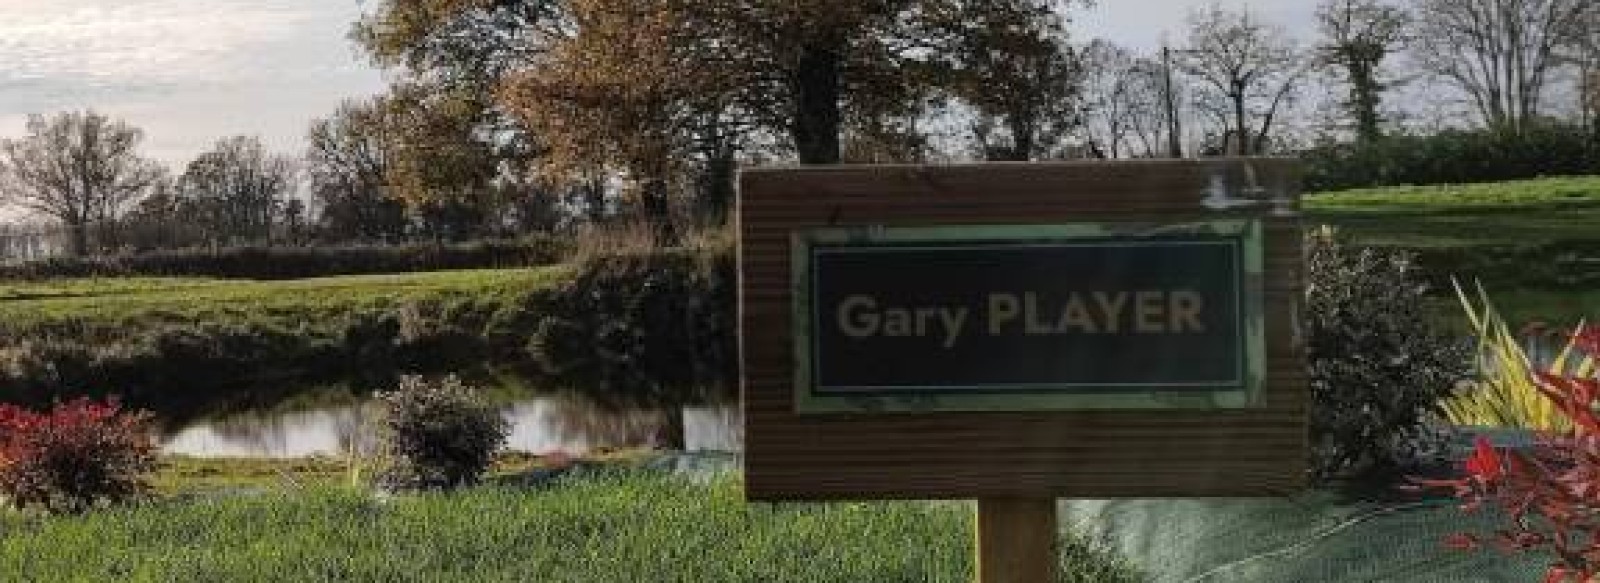 Gite du golf - Gary Player